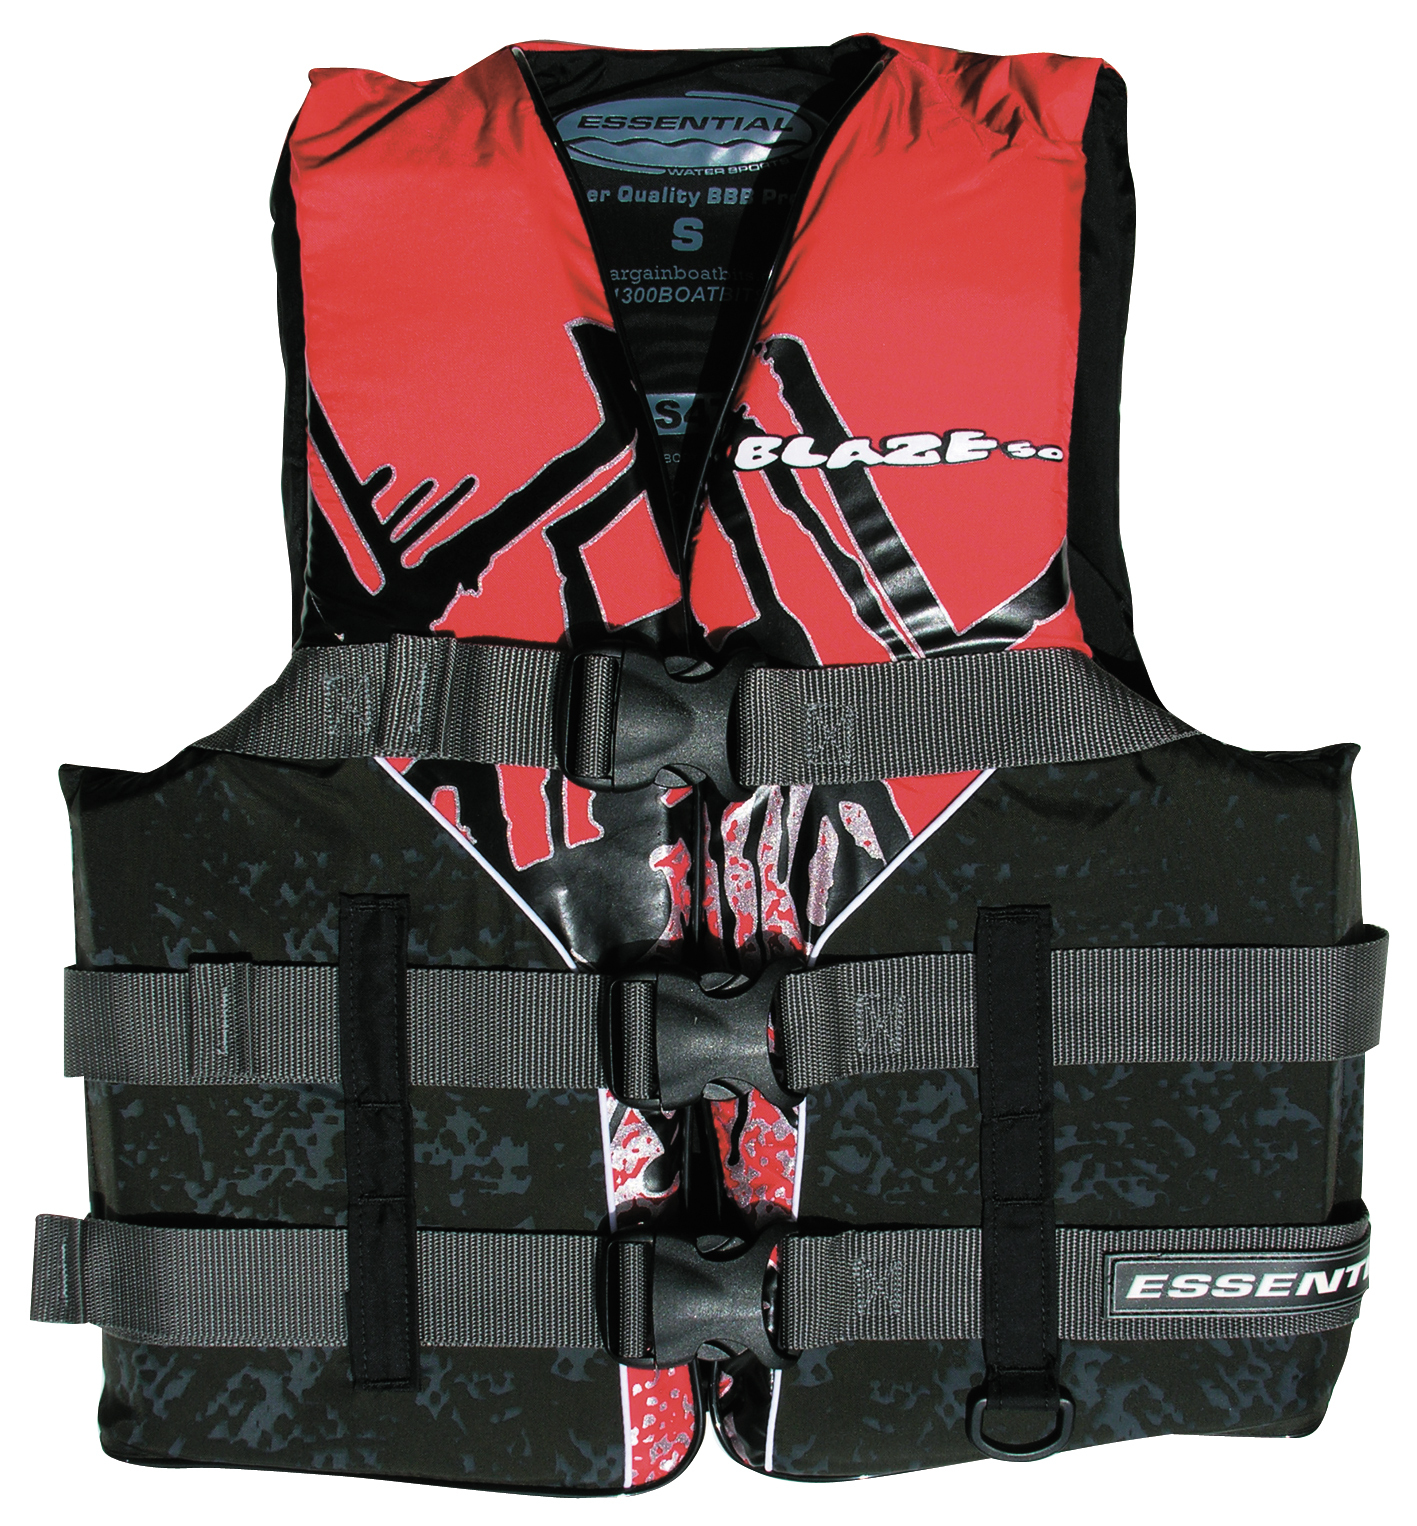 Essential Blaze L50 Adult Small Ski Vest Red Essential